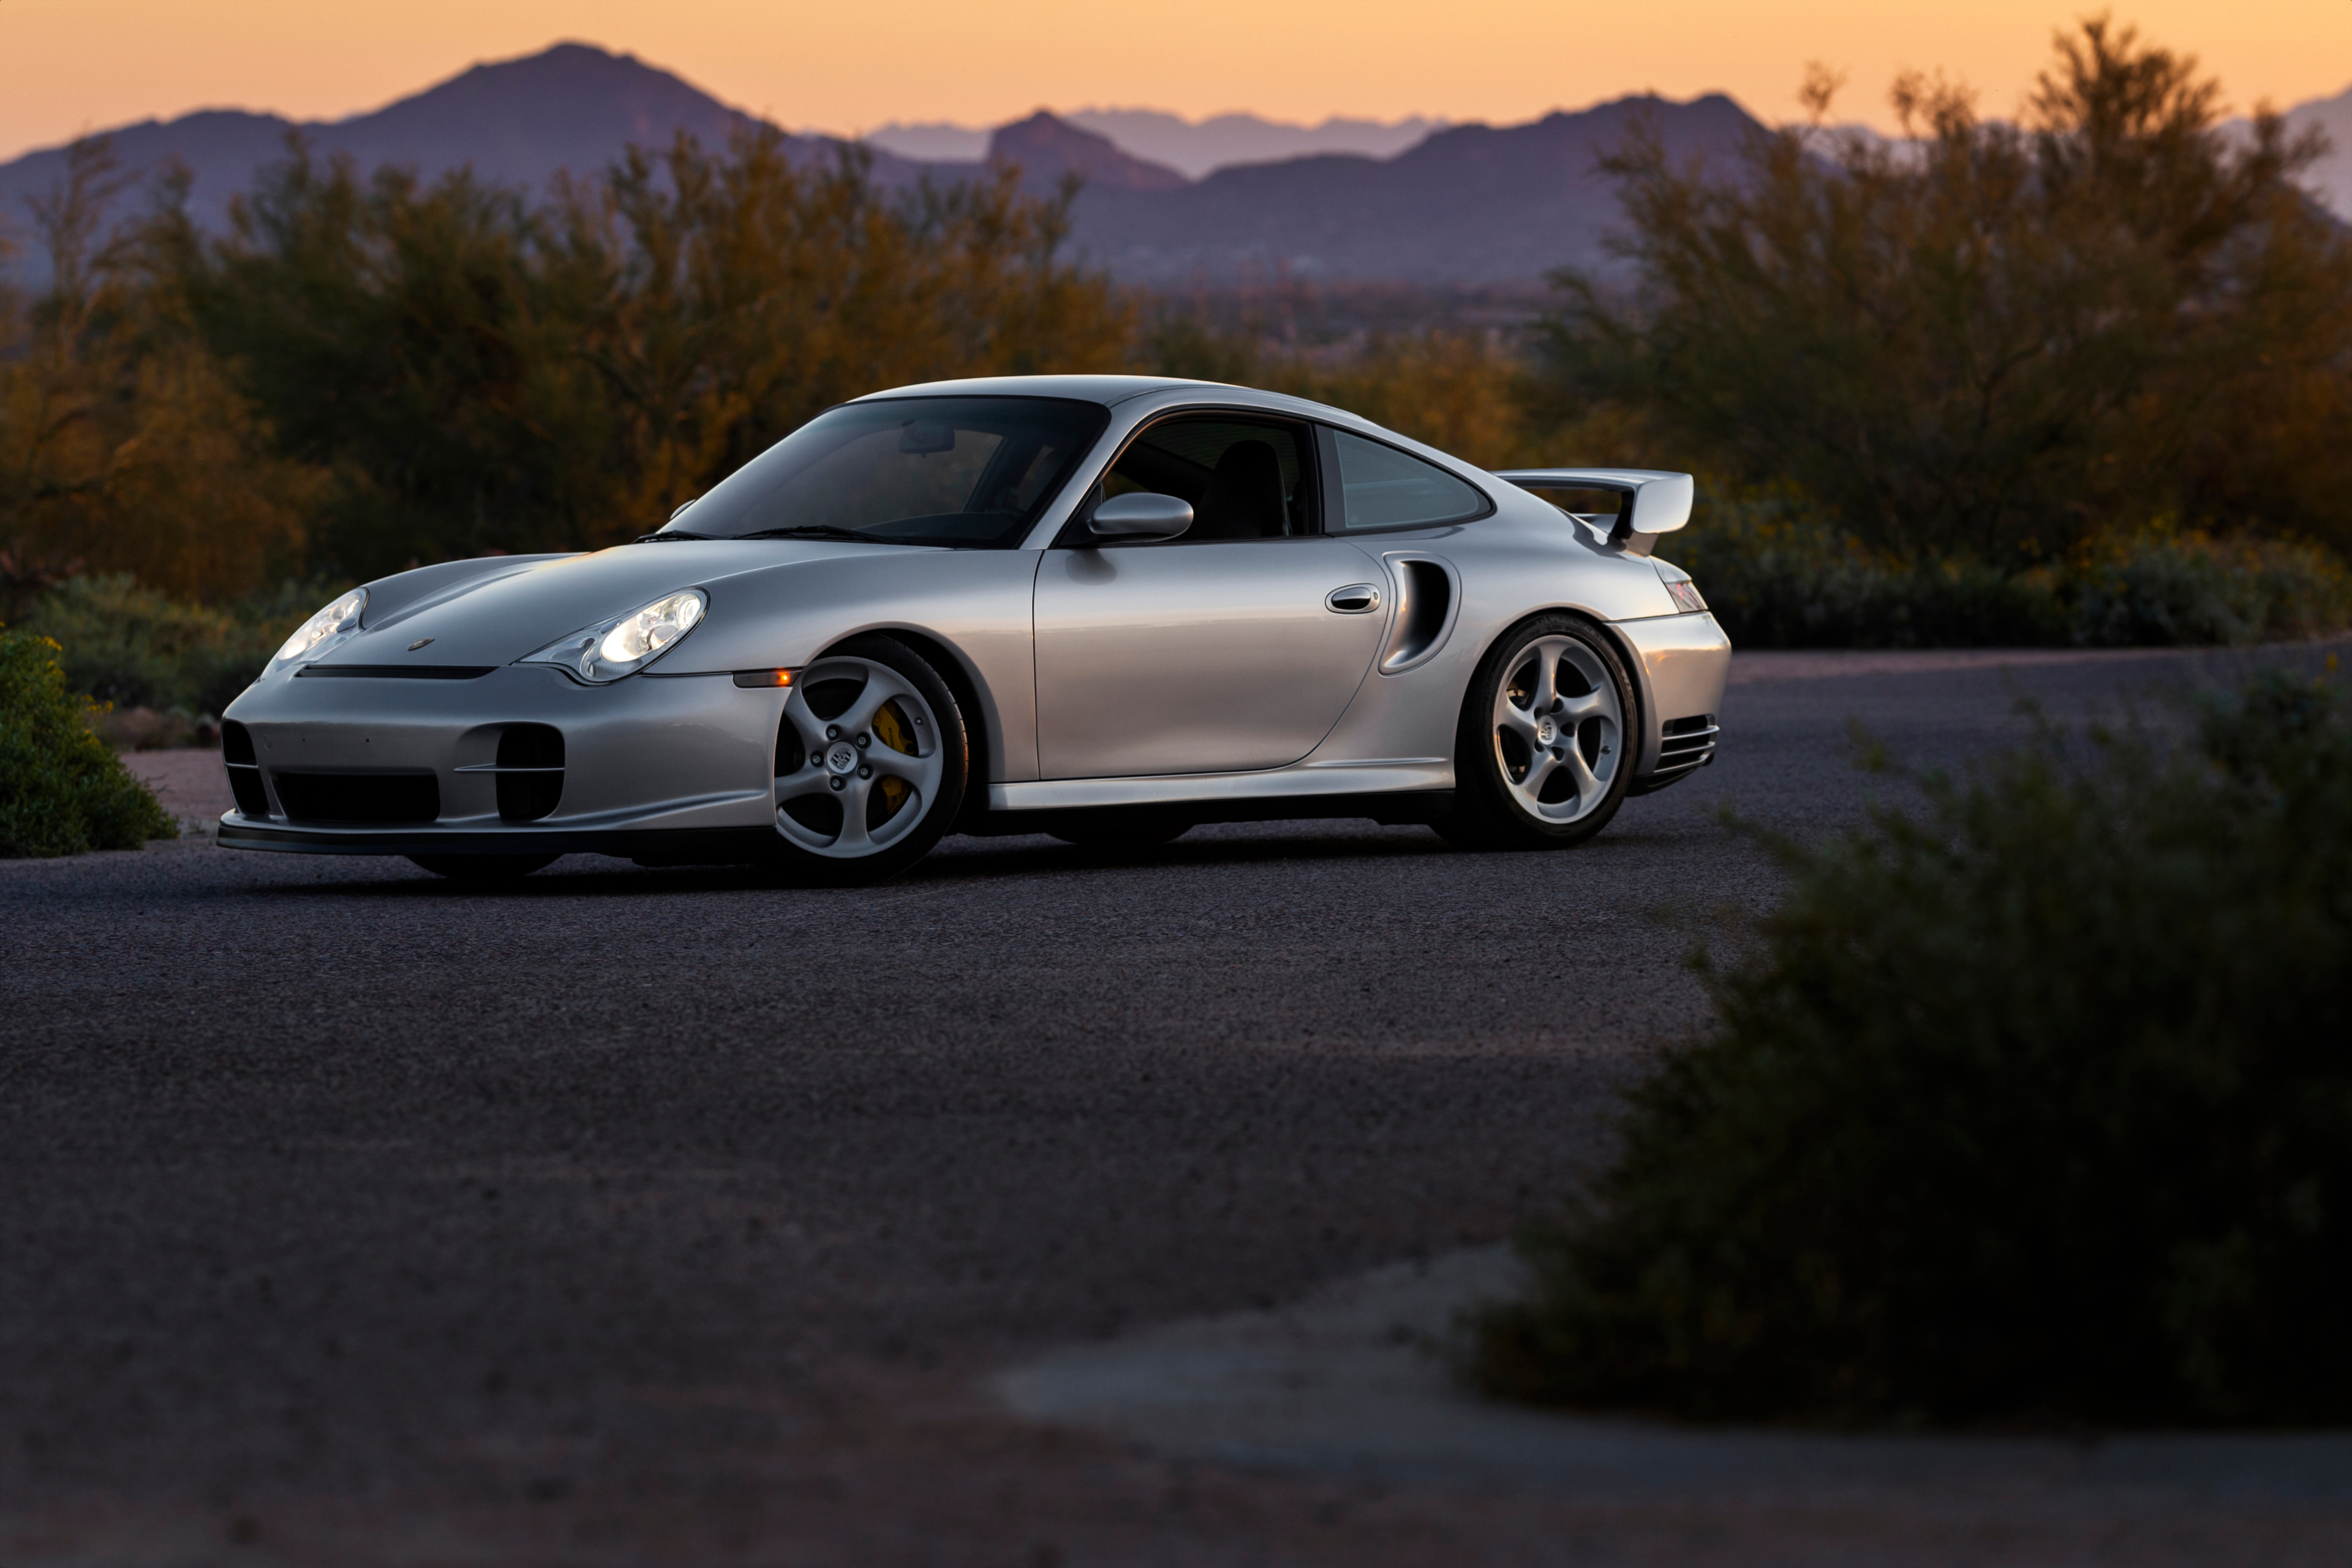 Wallpaper, vehicle, Porsche Porsche sports car, silver cars, asphalt 3840x2560